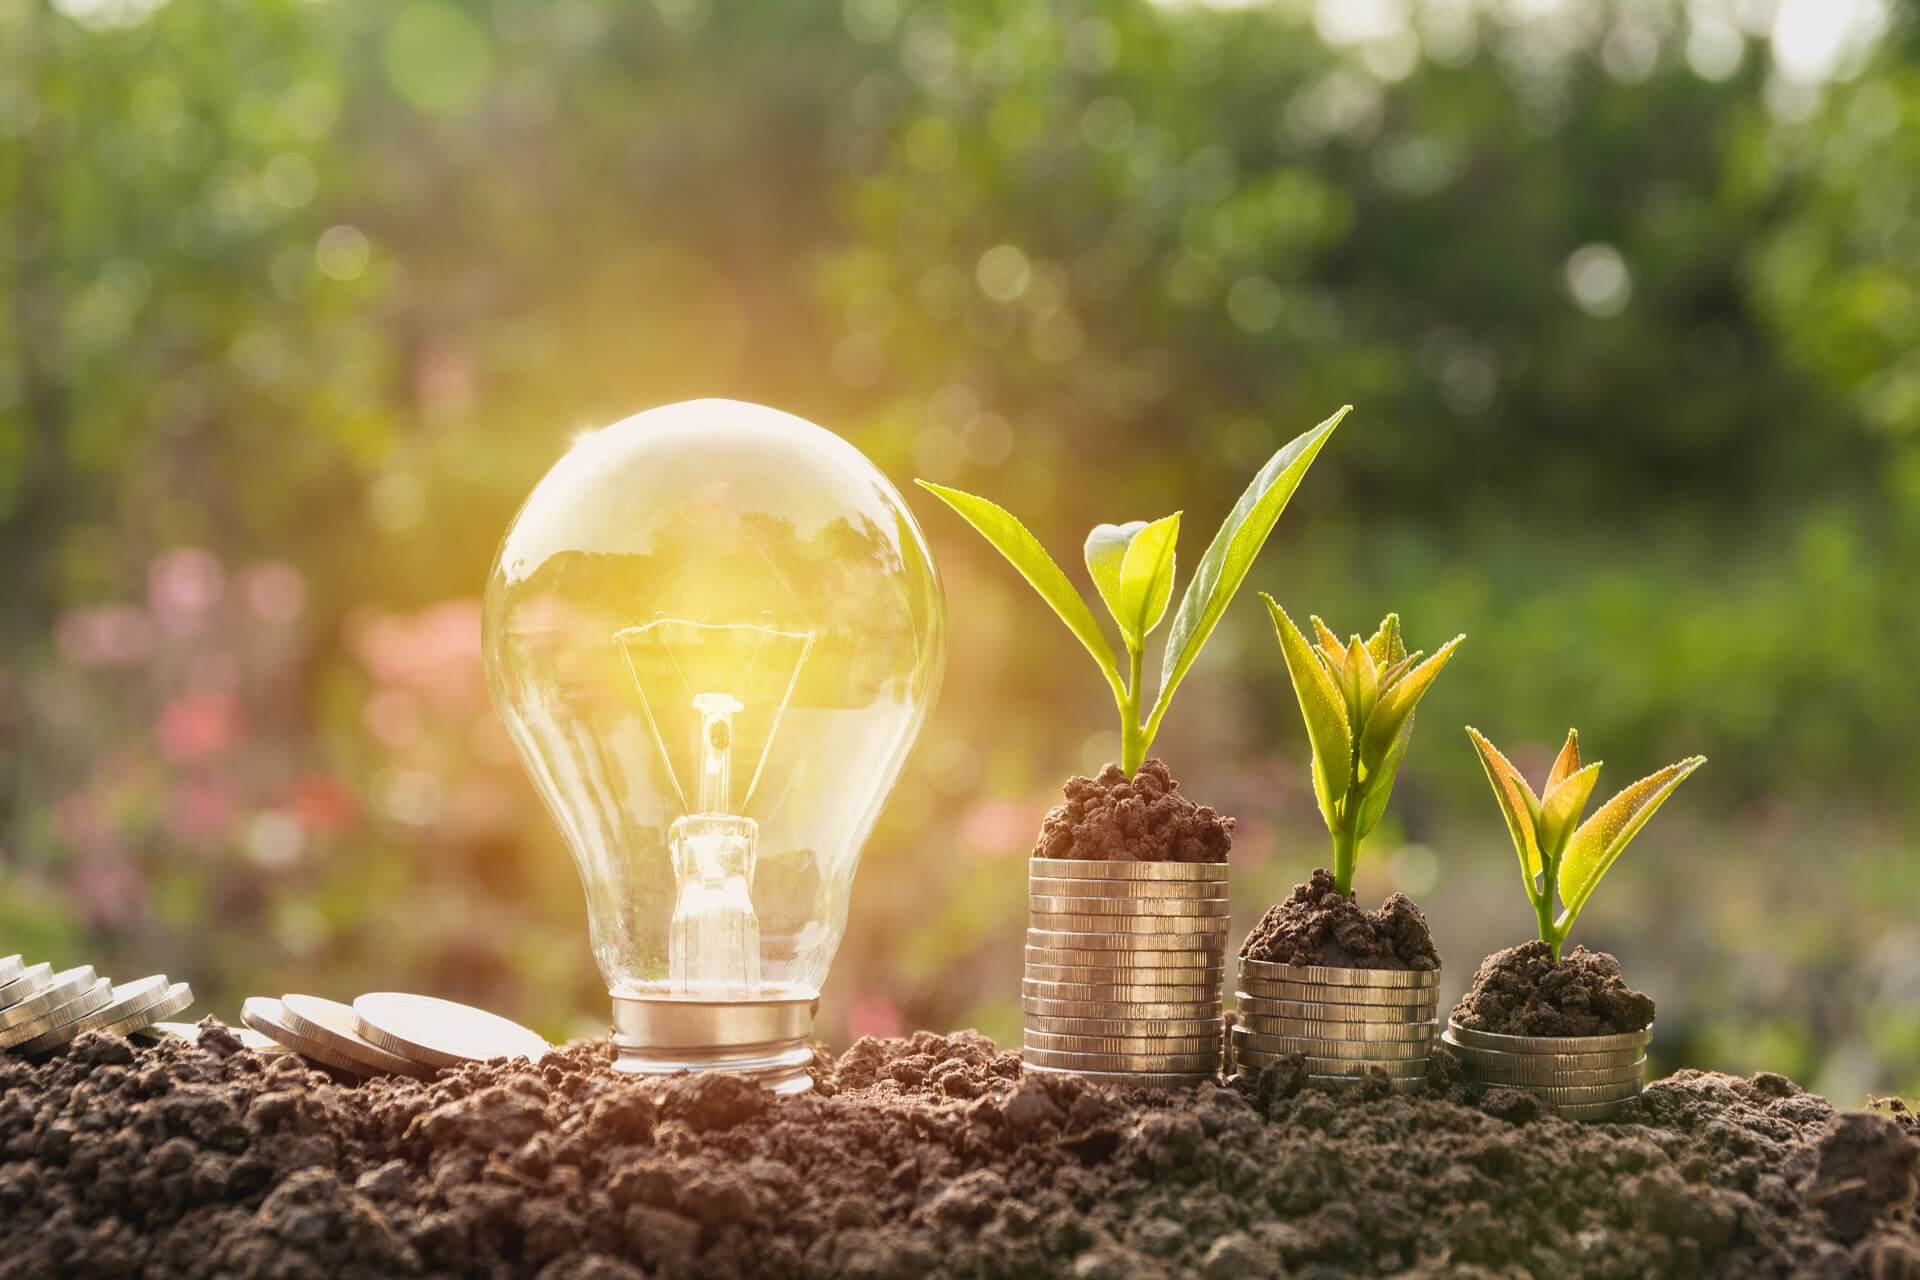 Energy saving light bulb and plants